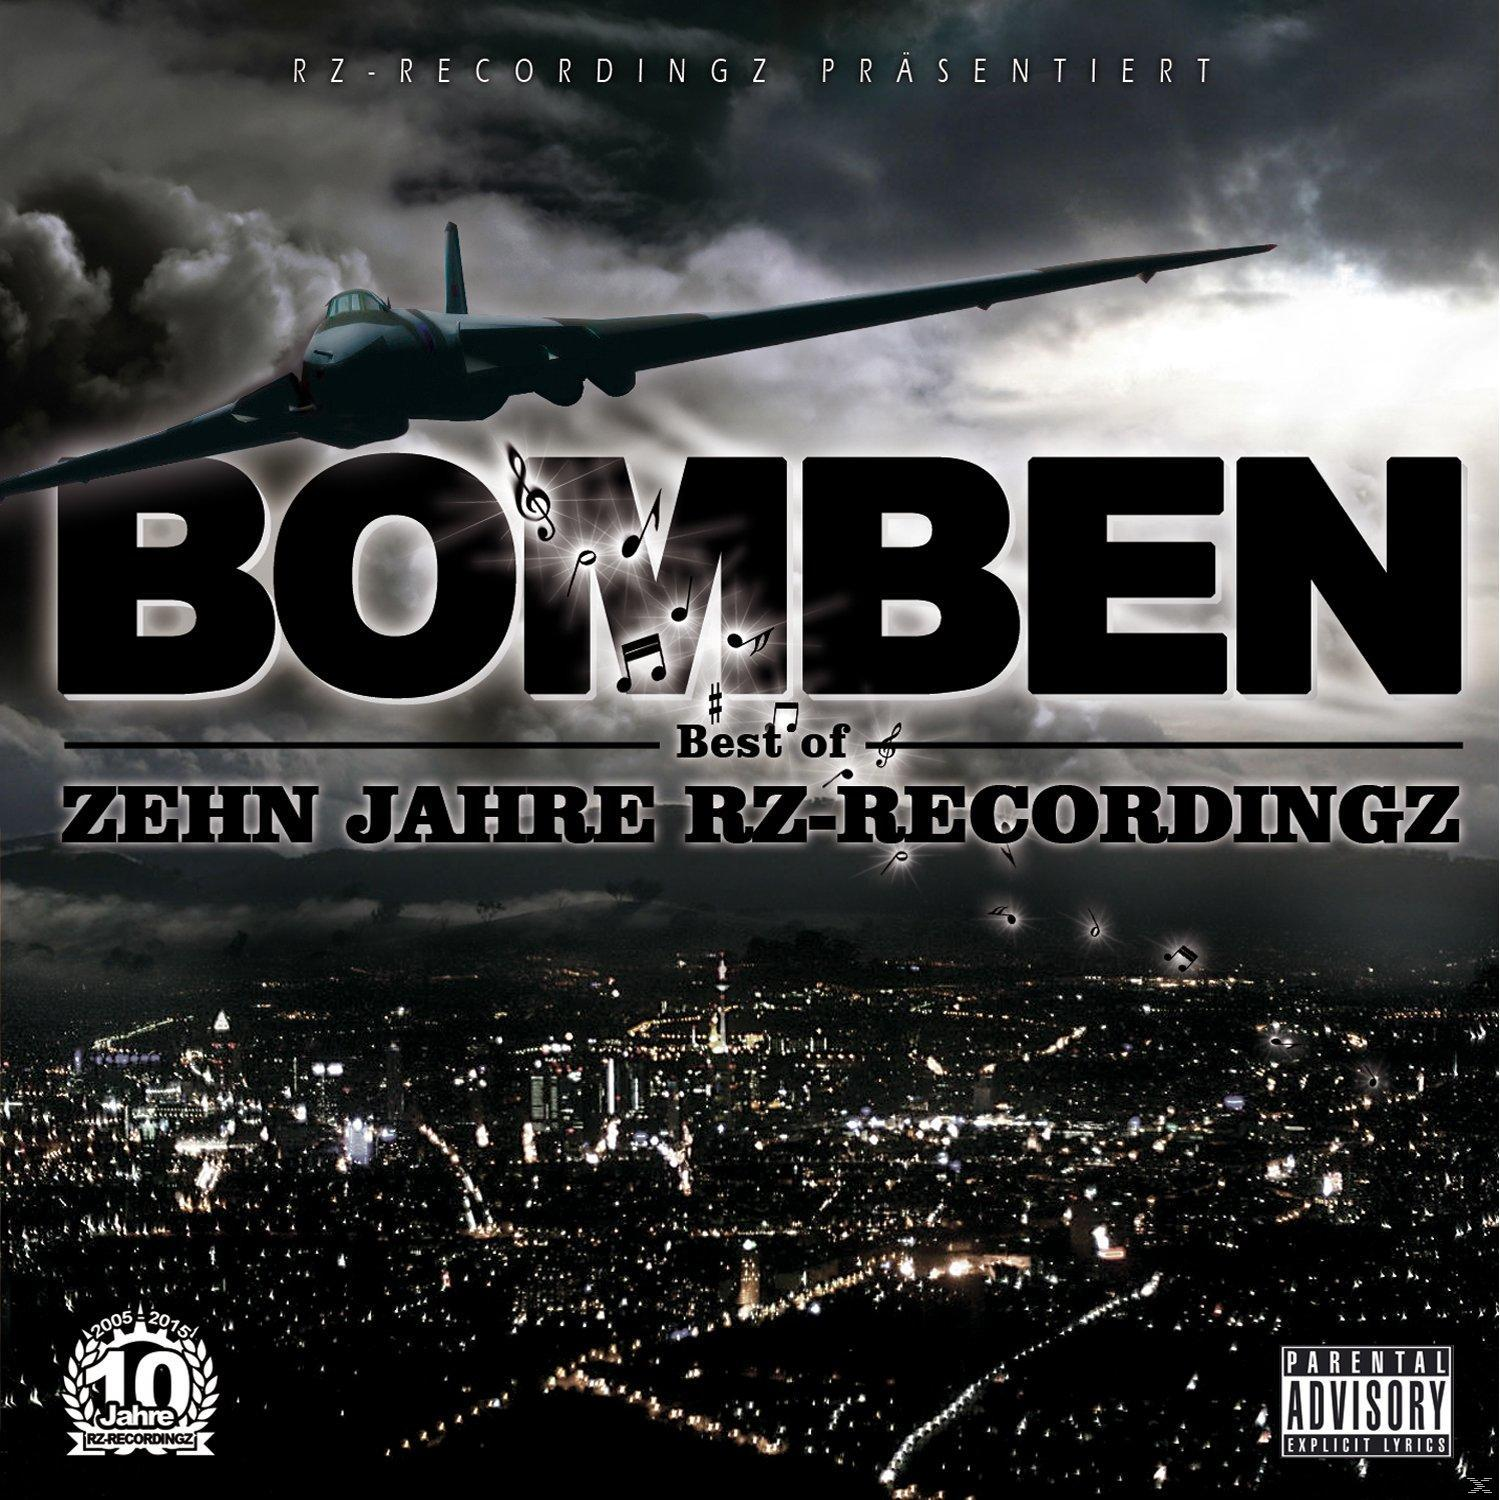 Rz-recordingz - (CD) Bomben 